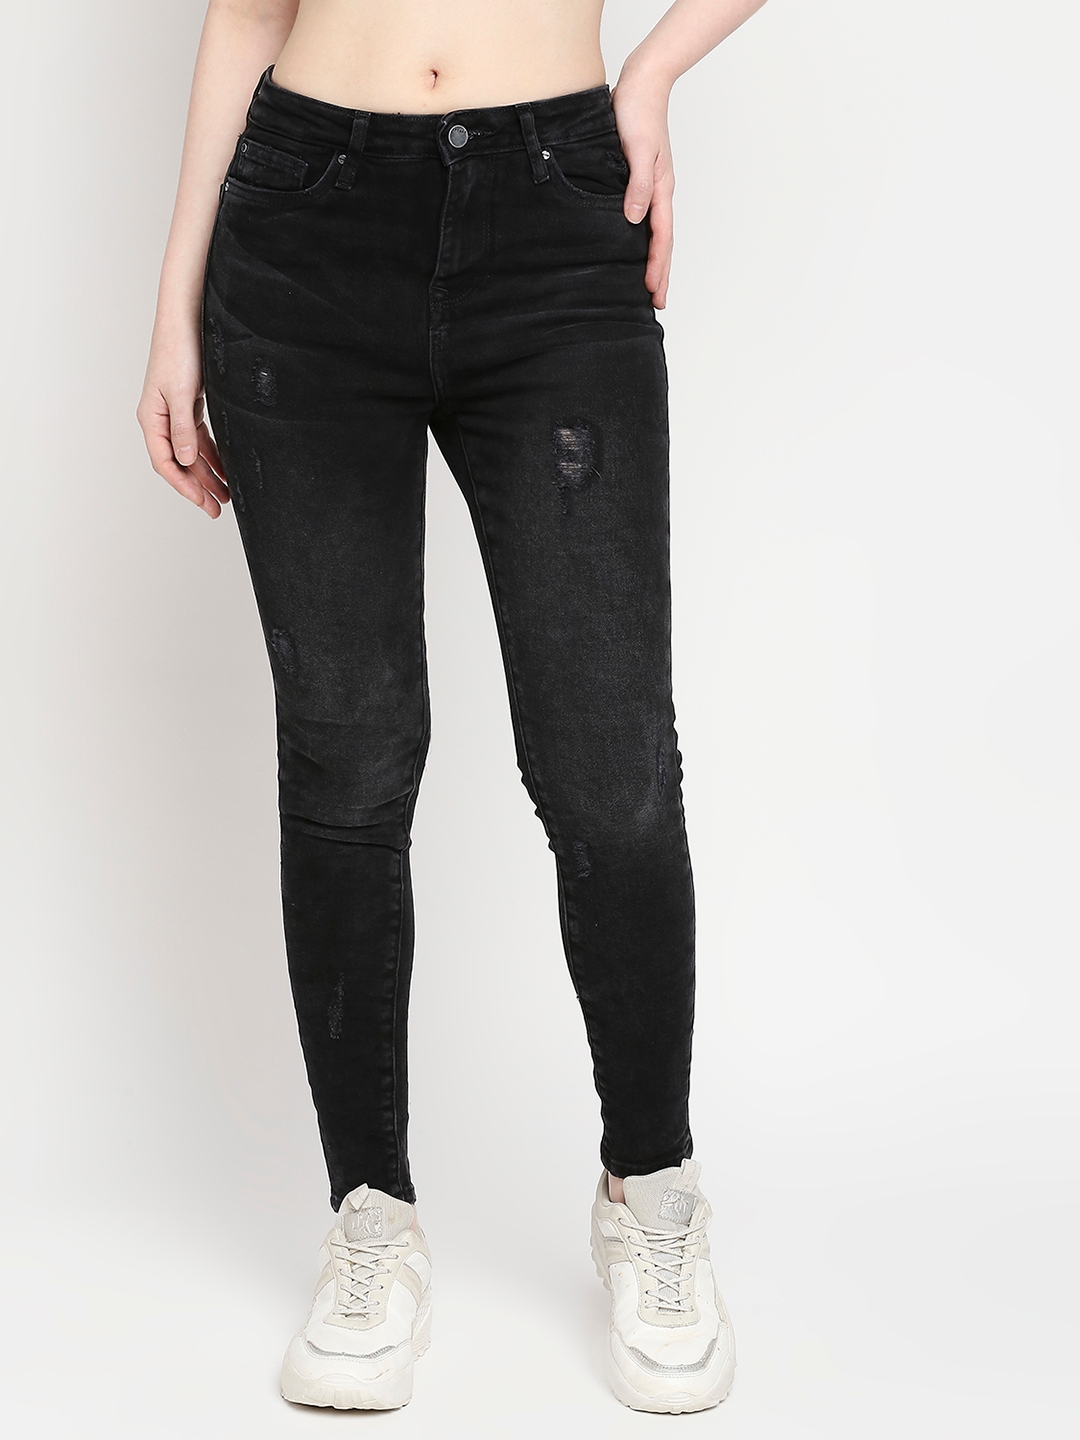 spykar | Women's Black Lycra Solid Jeans 0